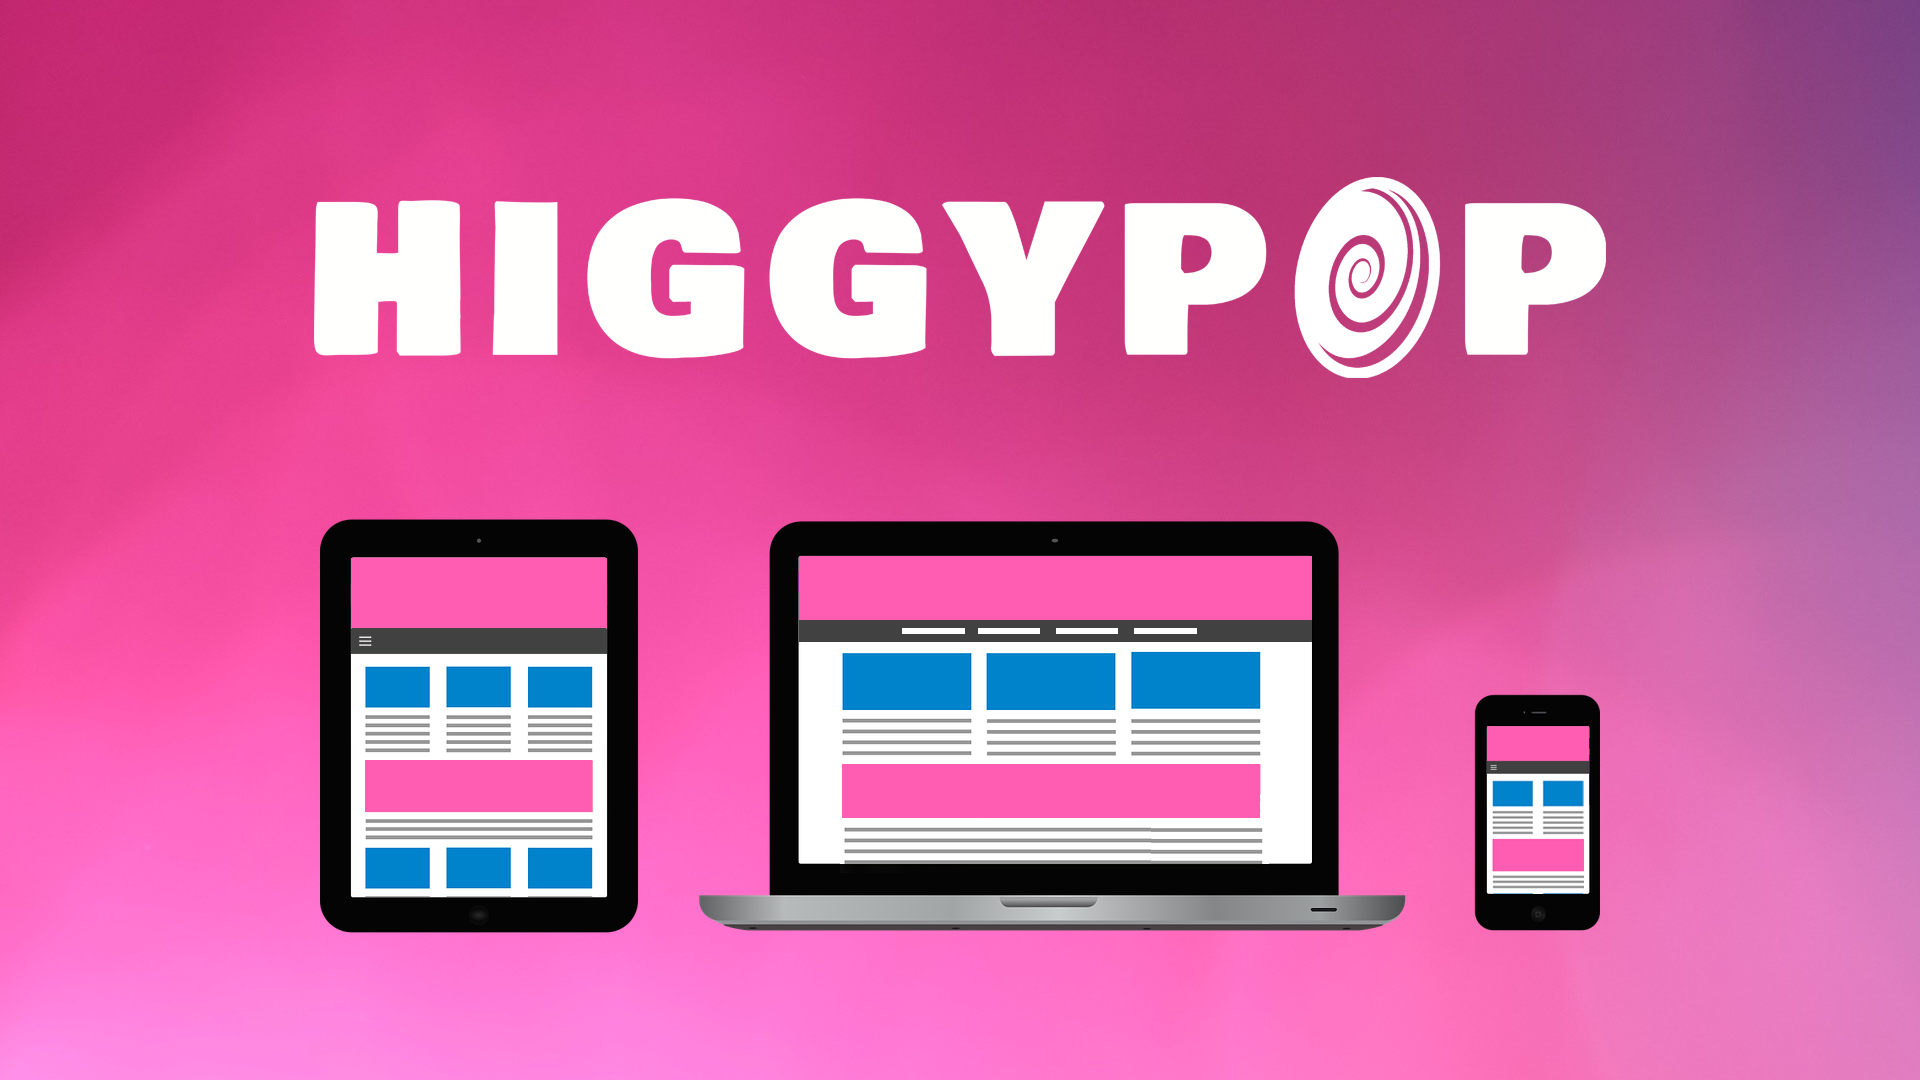 Higgypop.com